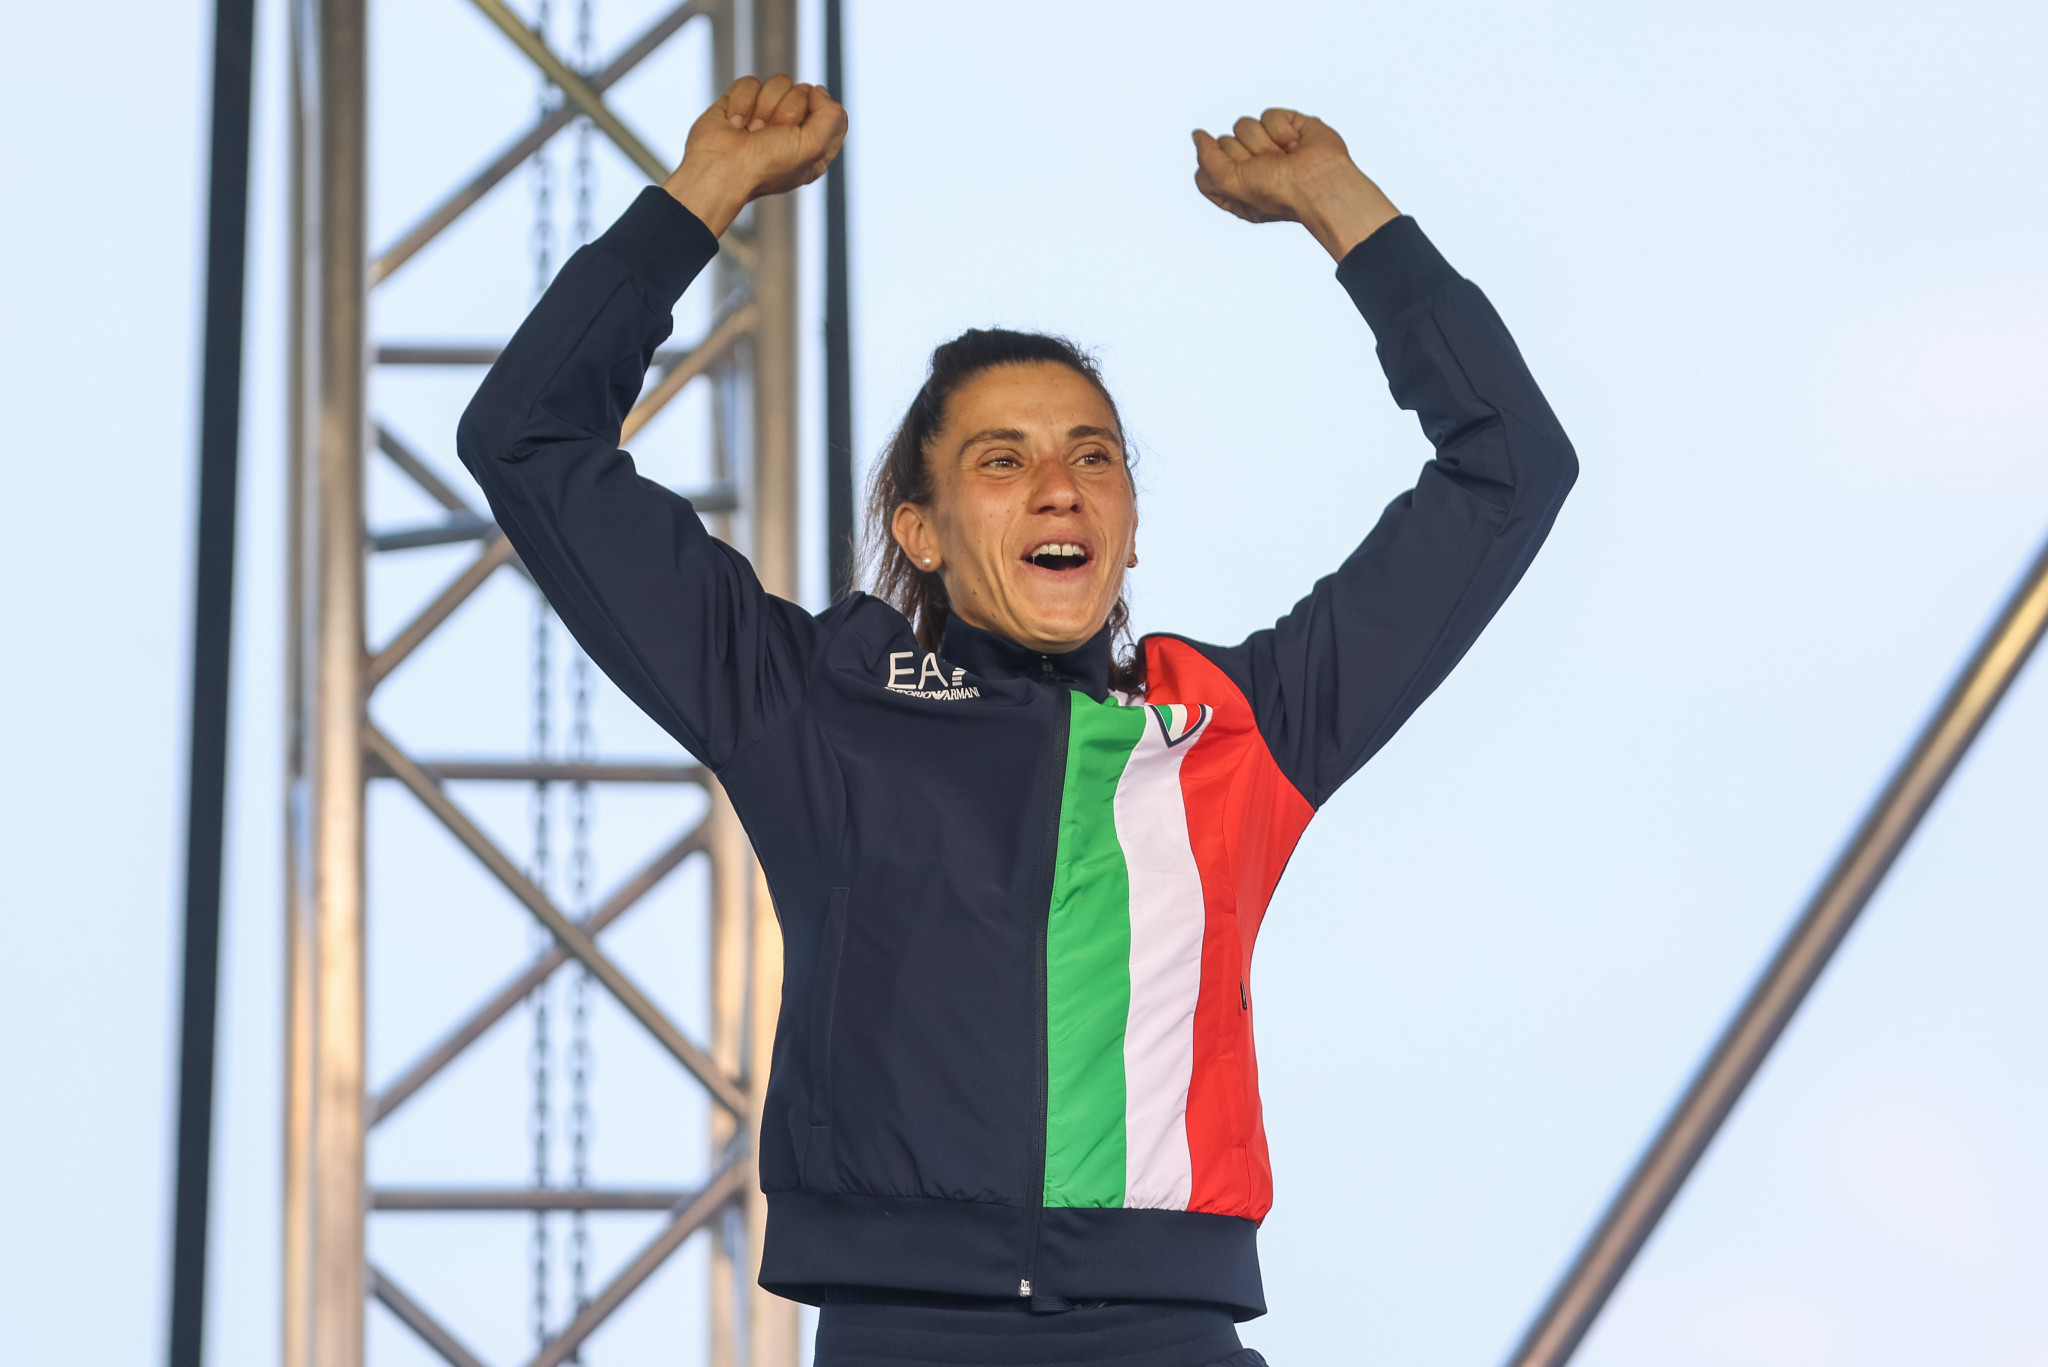 Italy cement Kraków-Małopolska 2023 medals table lead with modern pentathlon double